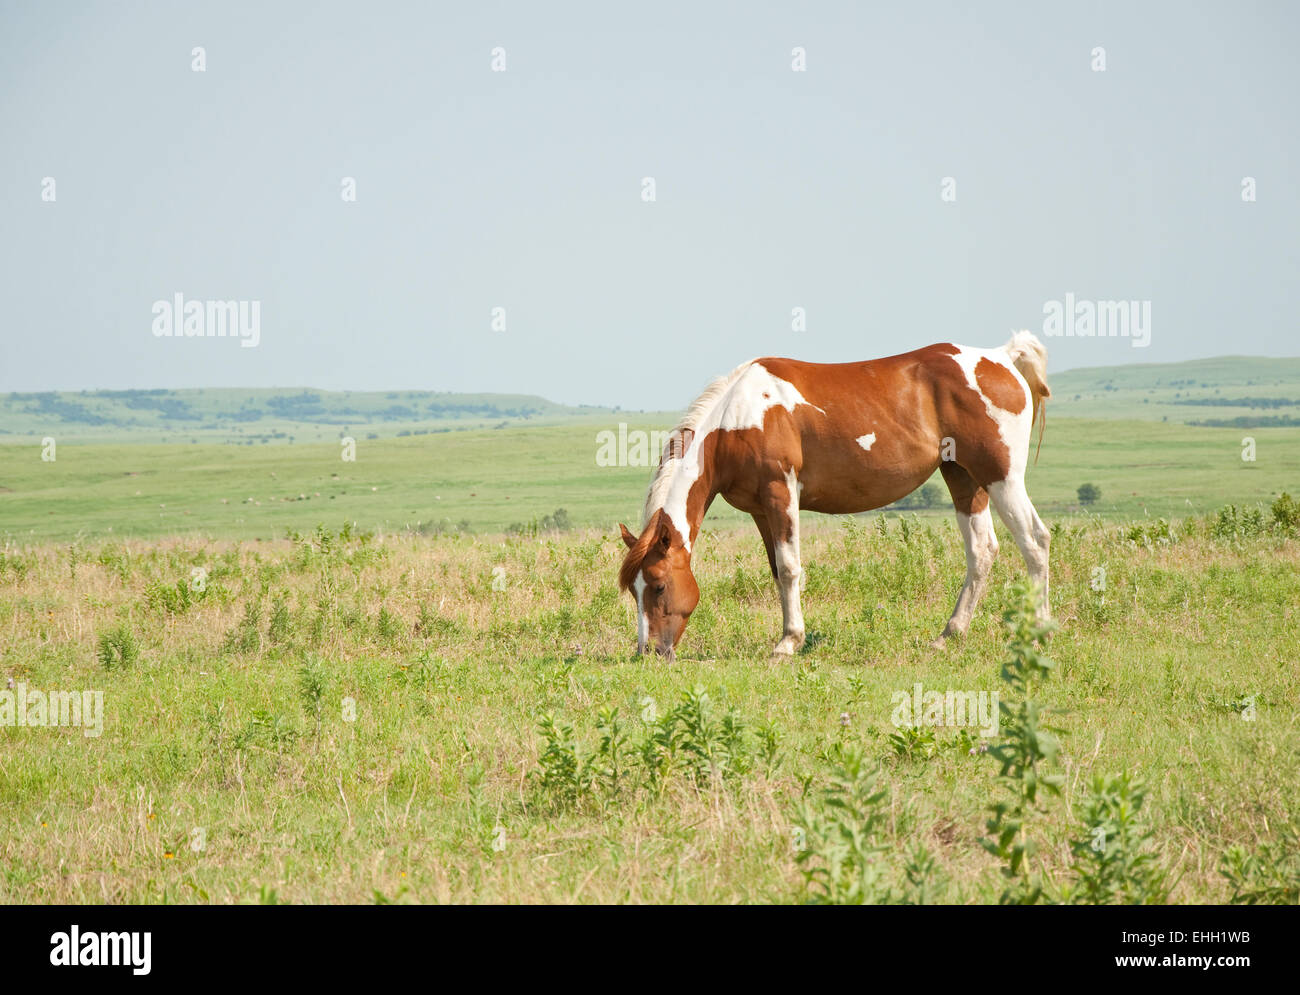 Peinture blanche et marron horse grazing in pasture prairie grande ouverte contre l'arrière-plan Banque D'Images